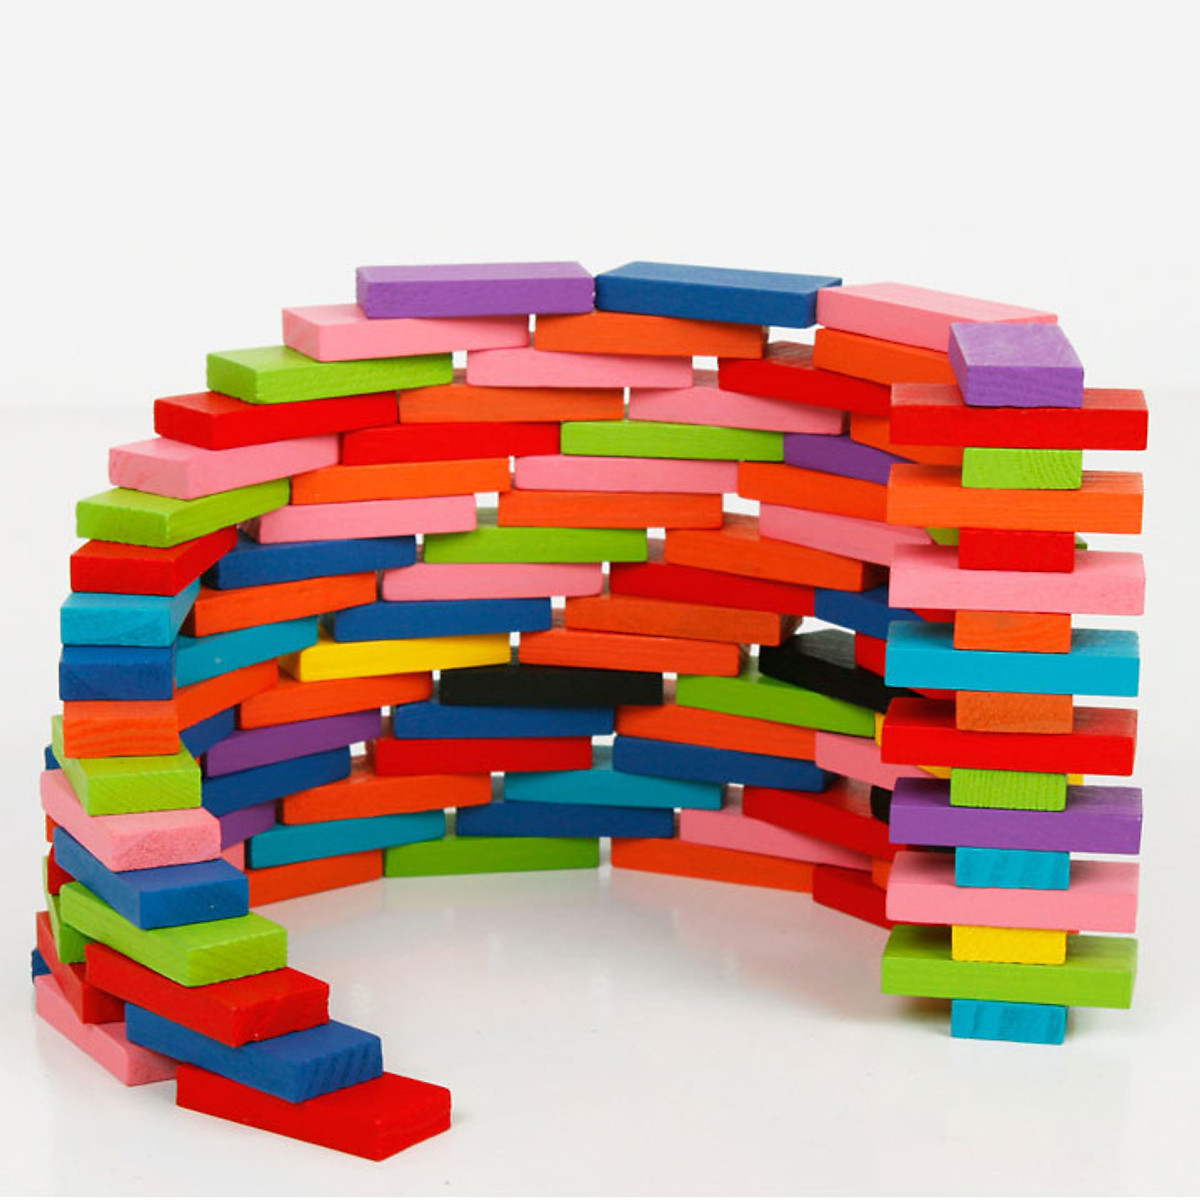 Mua Ngay Bộ 120 miếng ghép Domino chất liệu gỗ đồ chơi giáo dục Giúp Trẻ Phát Triển